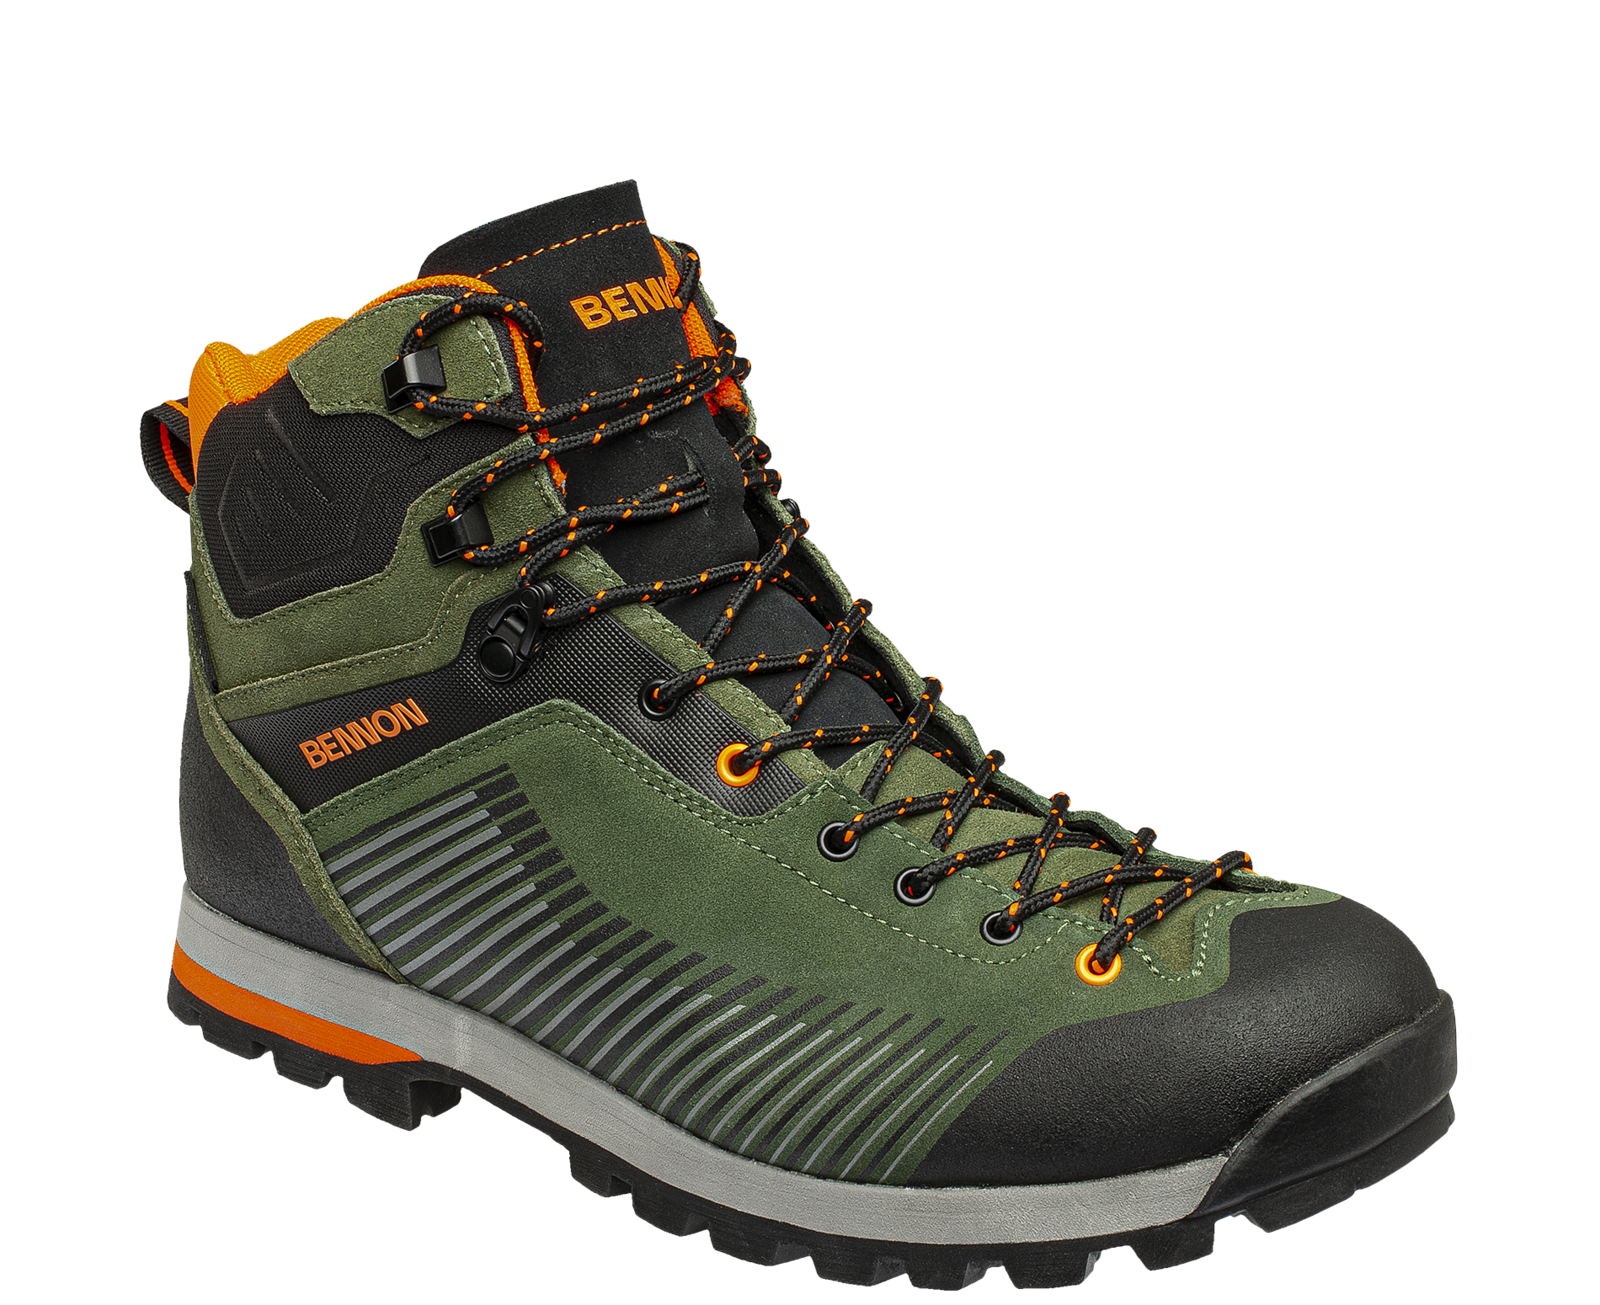 Kožená členková obuv s membránou Bennon Peak Green High - veľkosť: 42, farba: khaki/oranžová